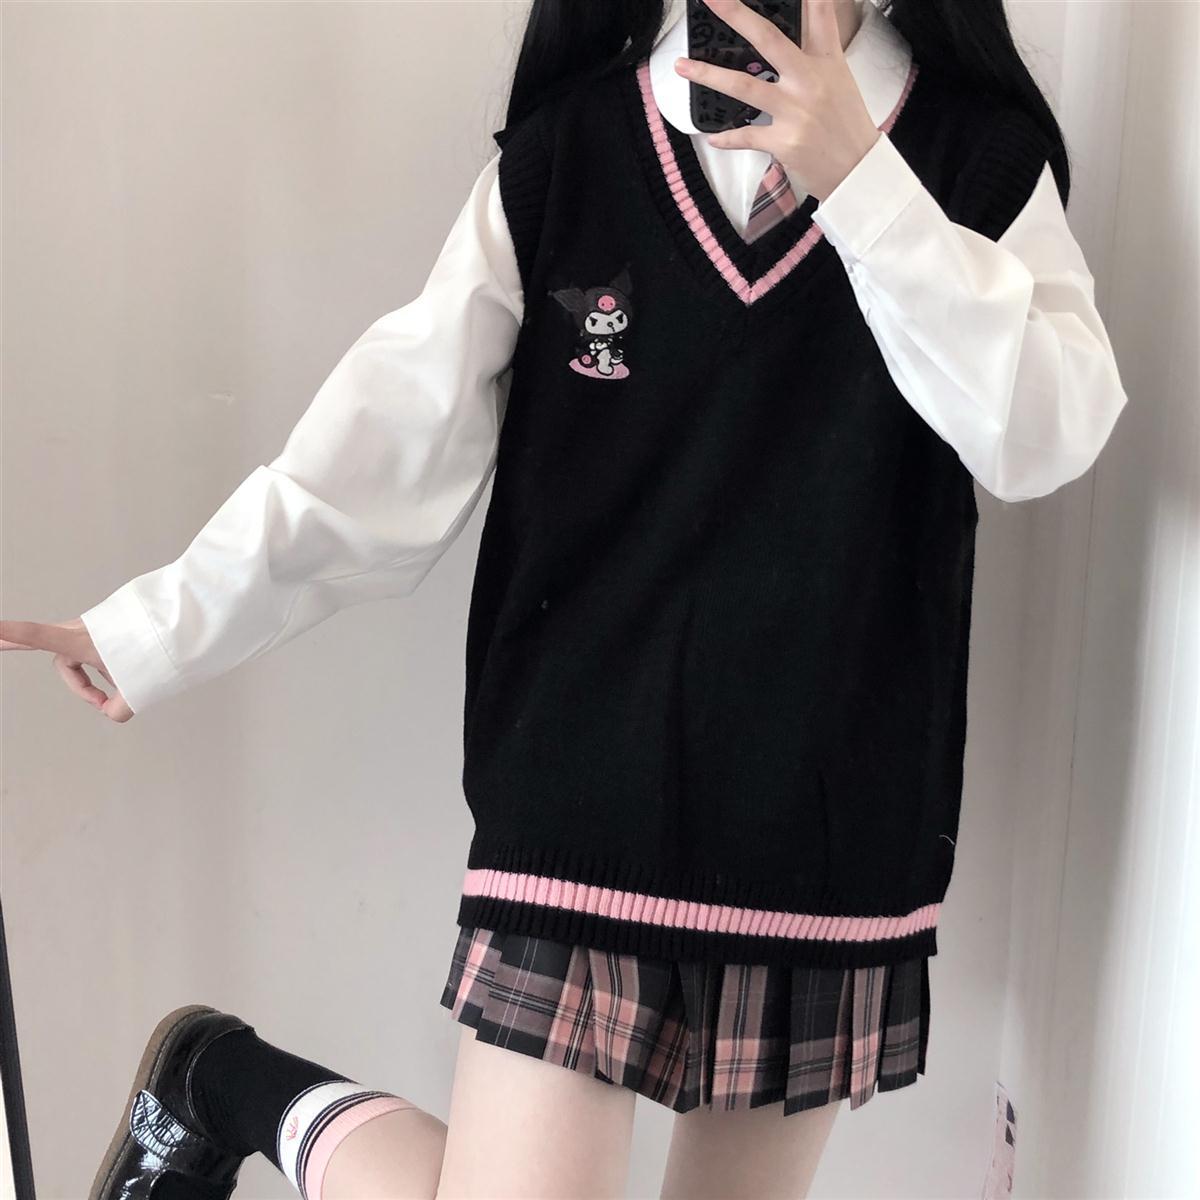 Cute kuromi diamond sweater vest – Cutiekill